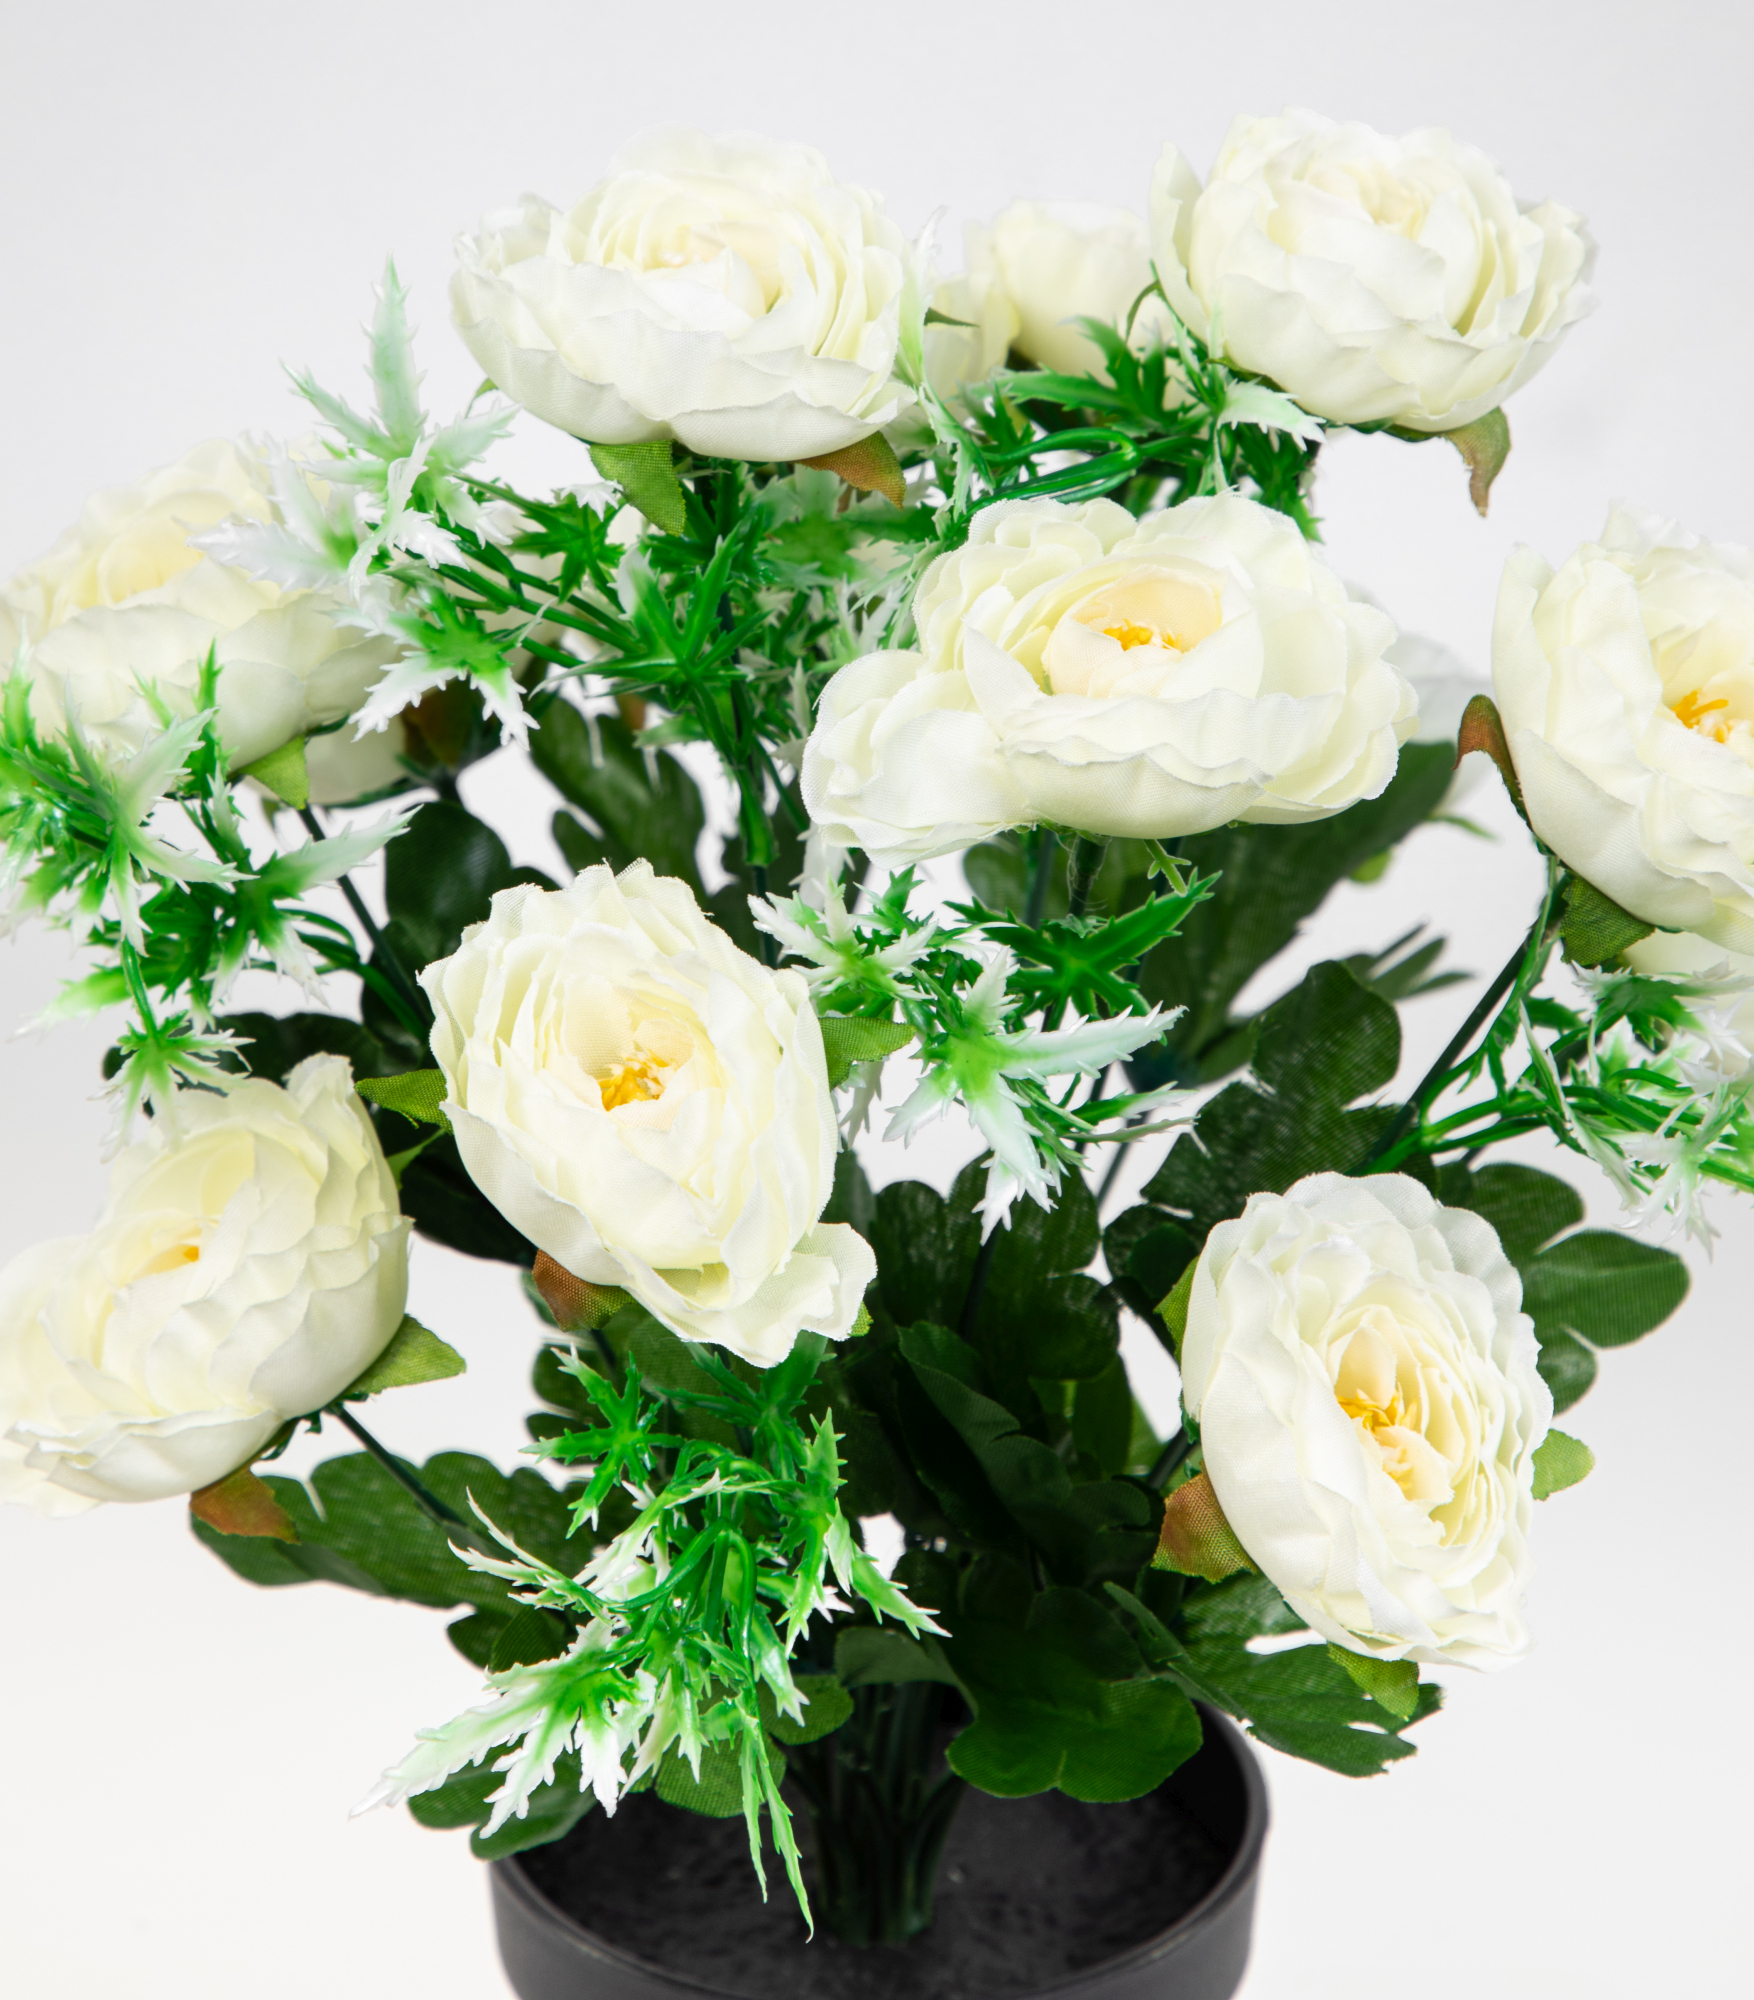 Ranunkelbusch 34cm weiß Blumen JA Topf künstliche Kunstpflanzen Ranunkel im Kunstblumen